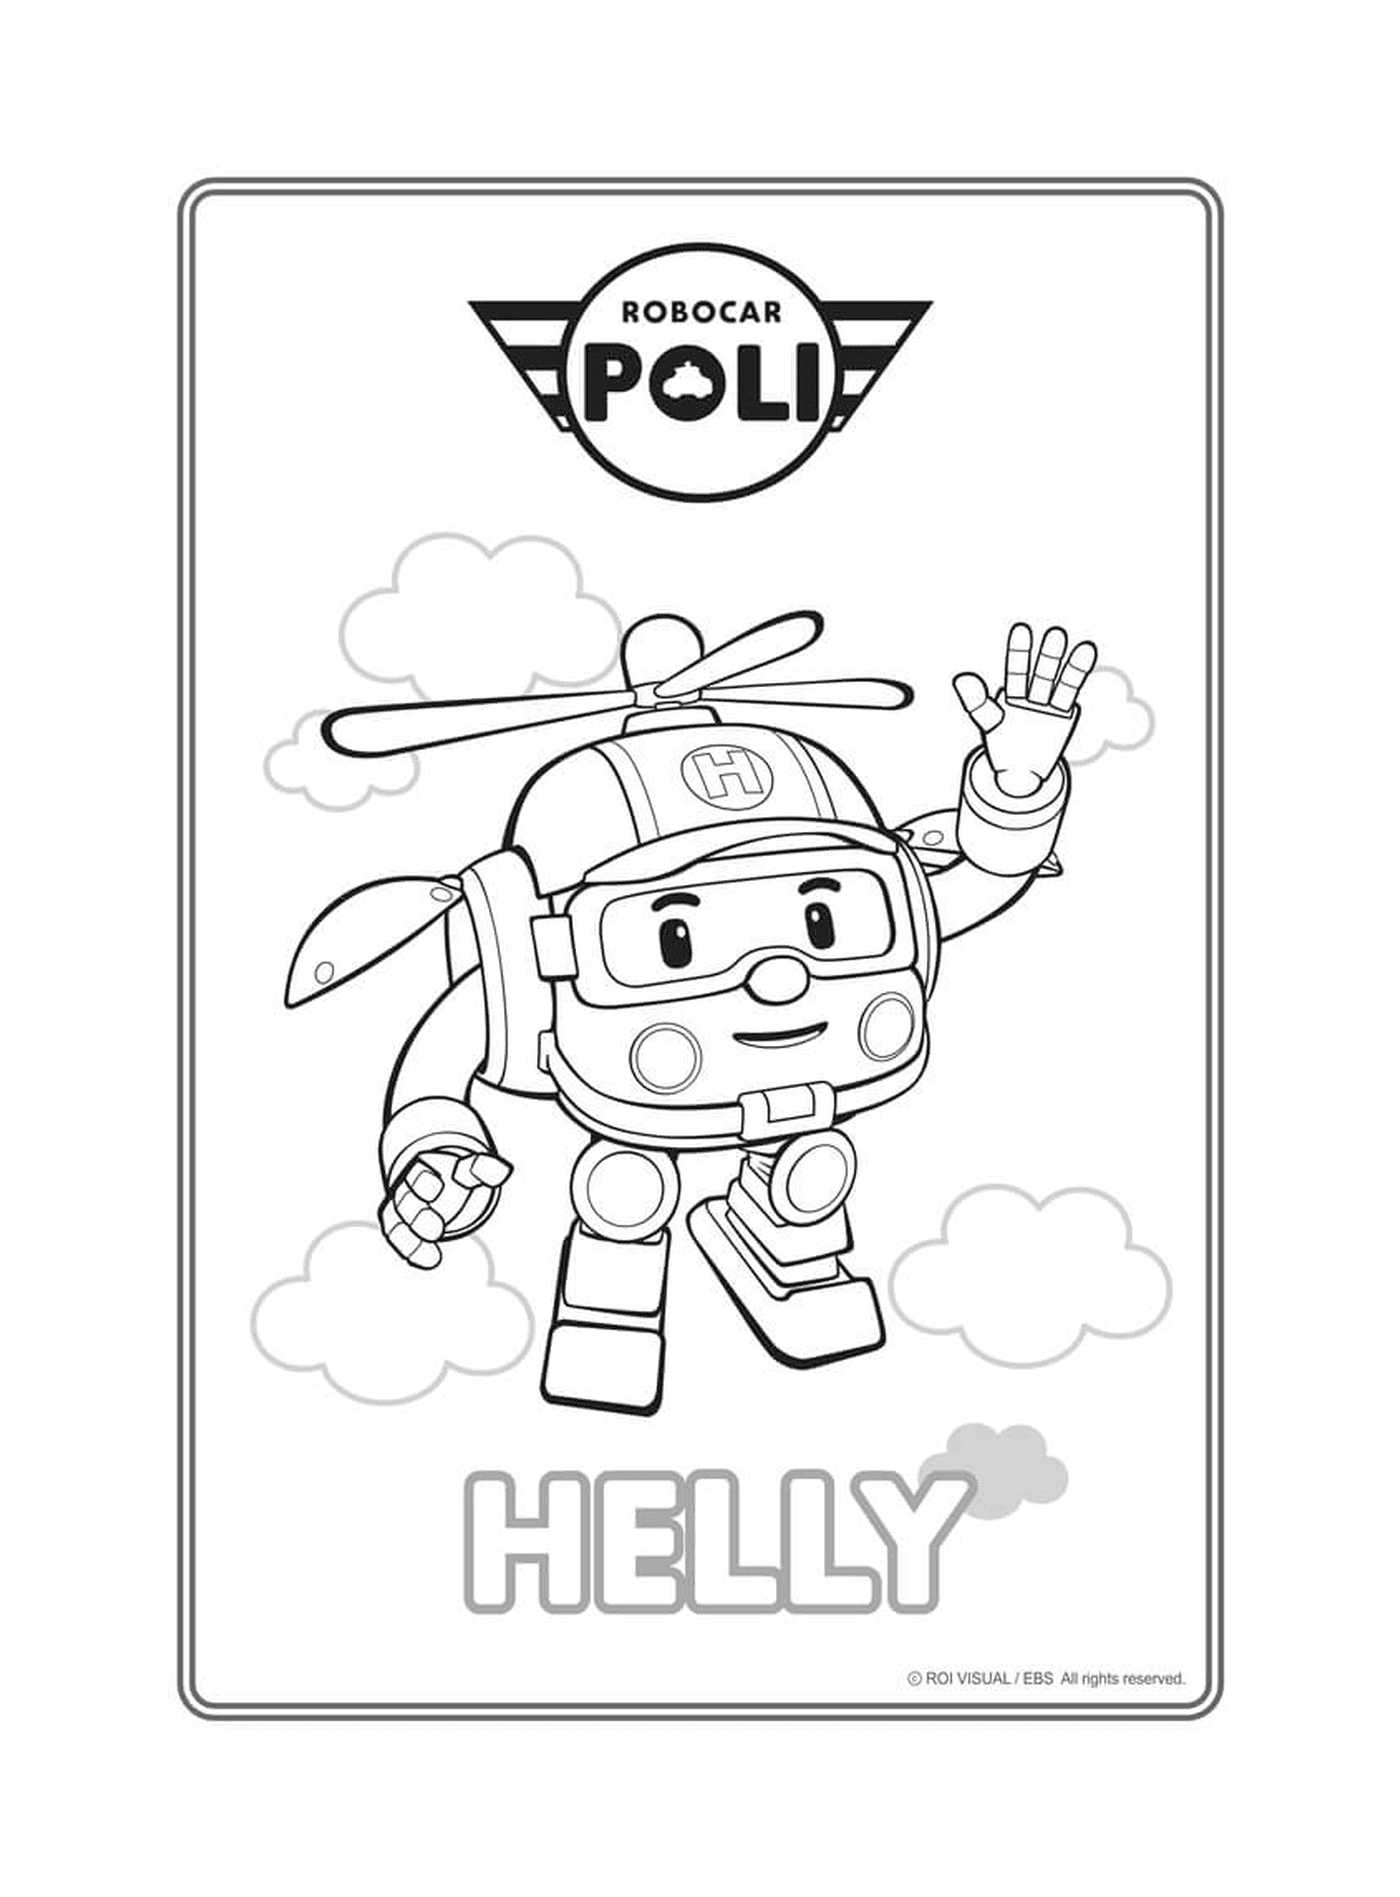  Helly, l'elicottero di Robocar Poli 